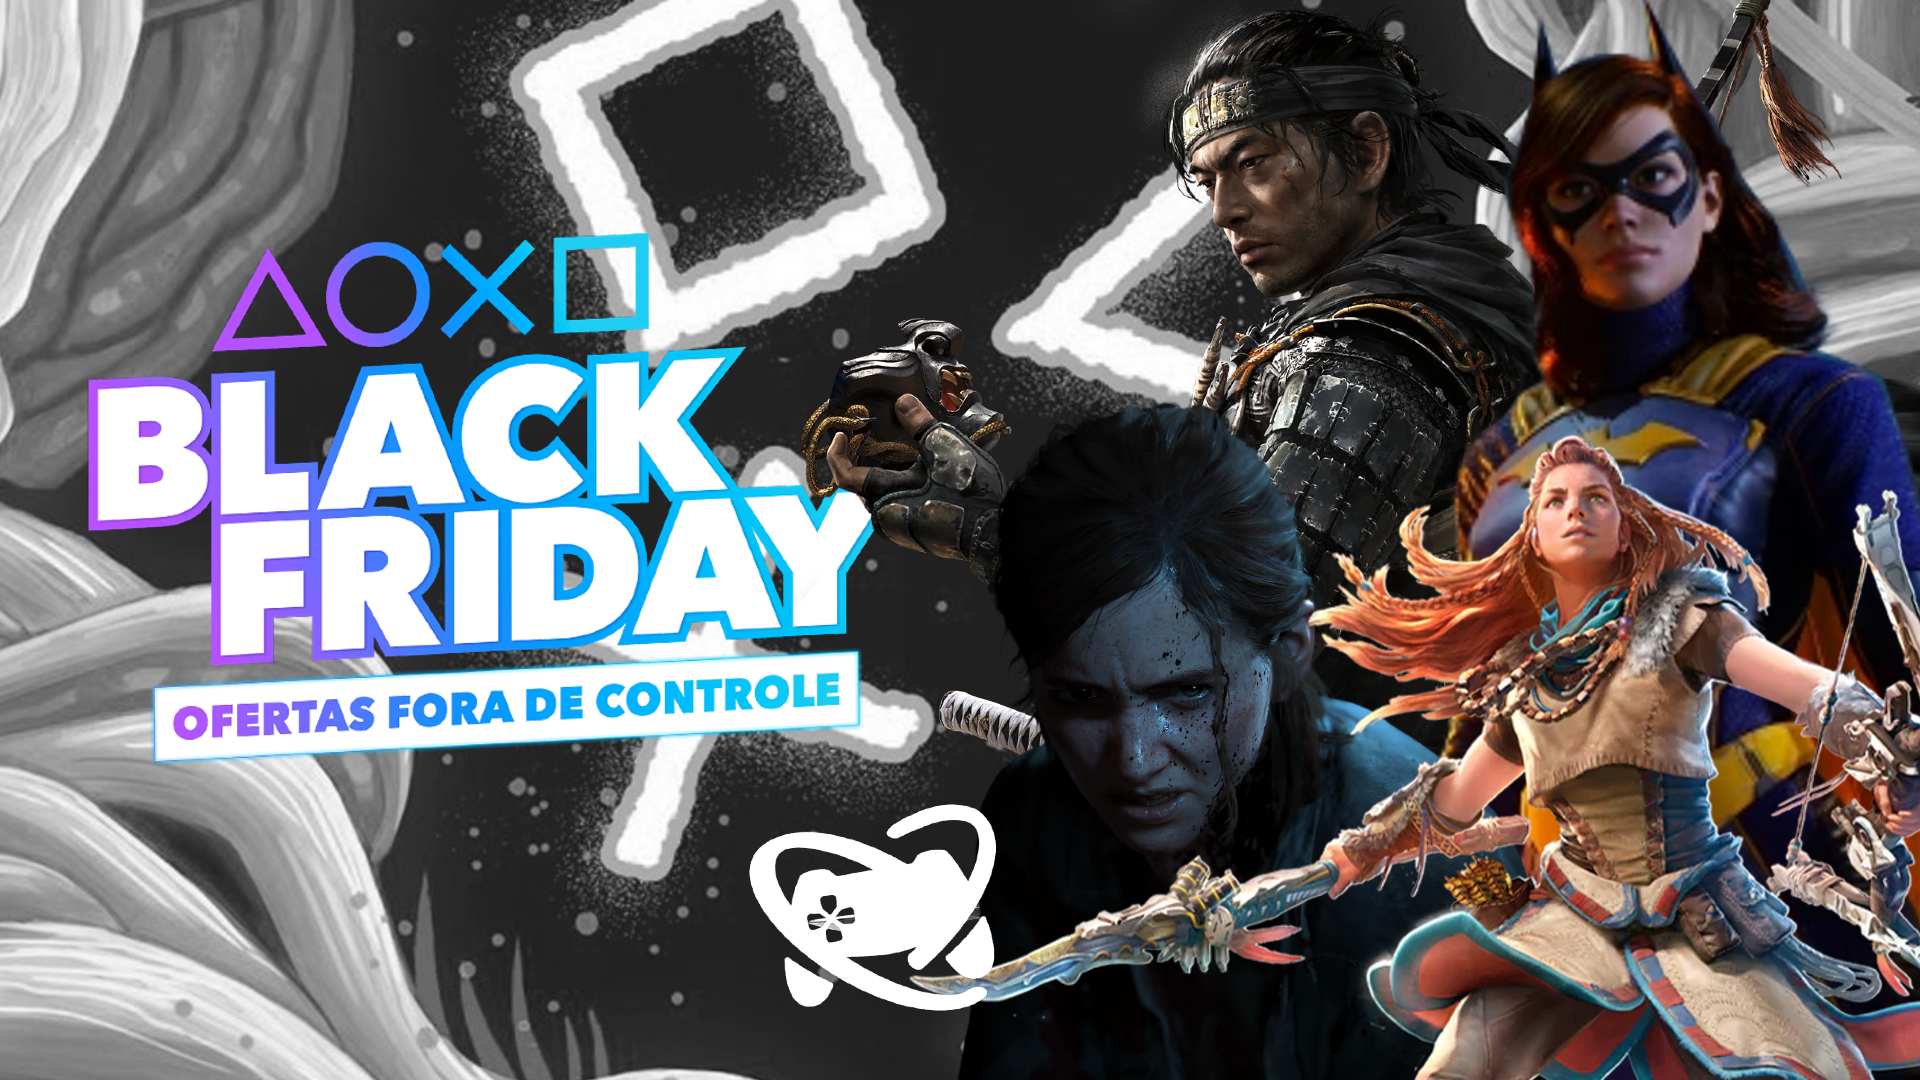 Videojogos Descubra a imperdível campanha da Playstation na Black Friday